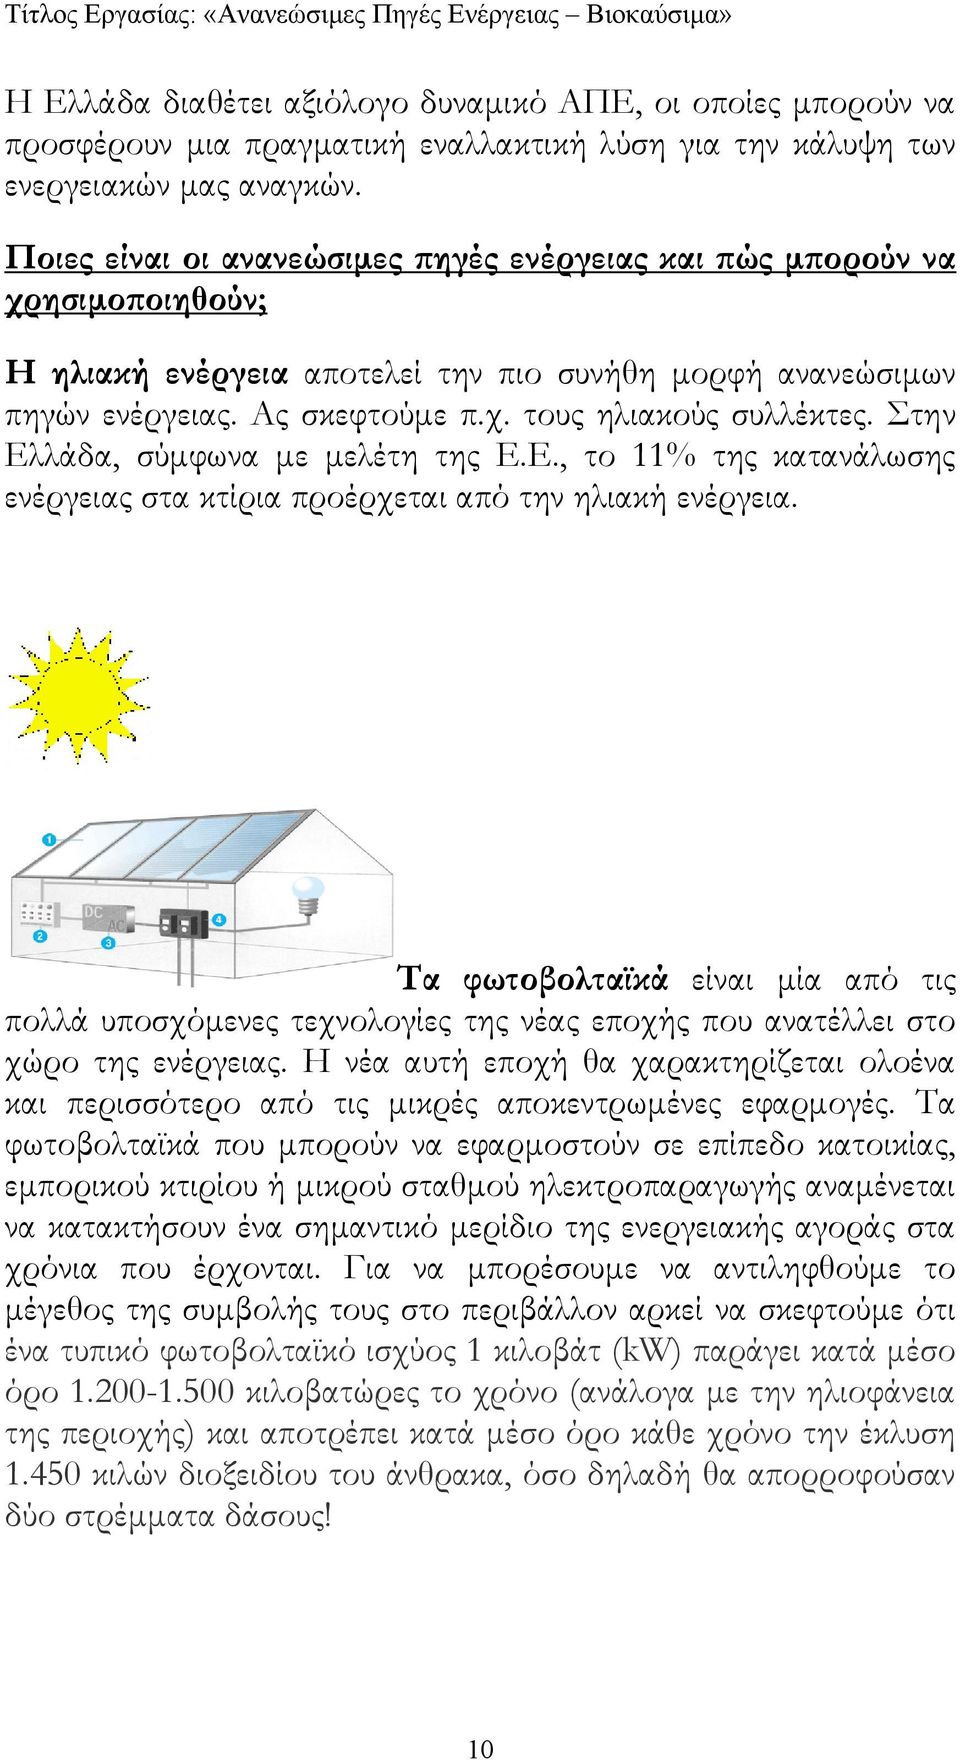 Στην Ελλάδα, σύµφωνα µε µελέτη της Ε.Ε., το 11% της κατανάλωσης ενέργειας στα κτίρια προέρχεται από την ηλιακή ενέργεια.